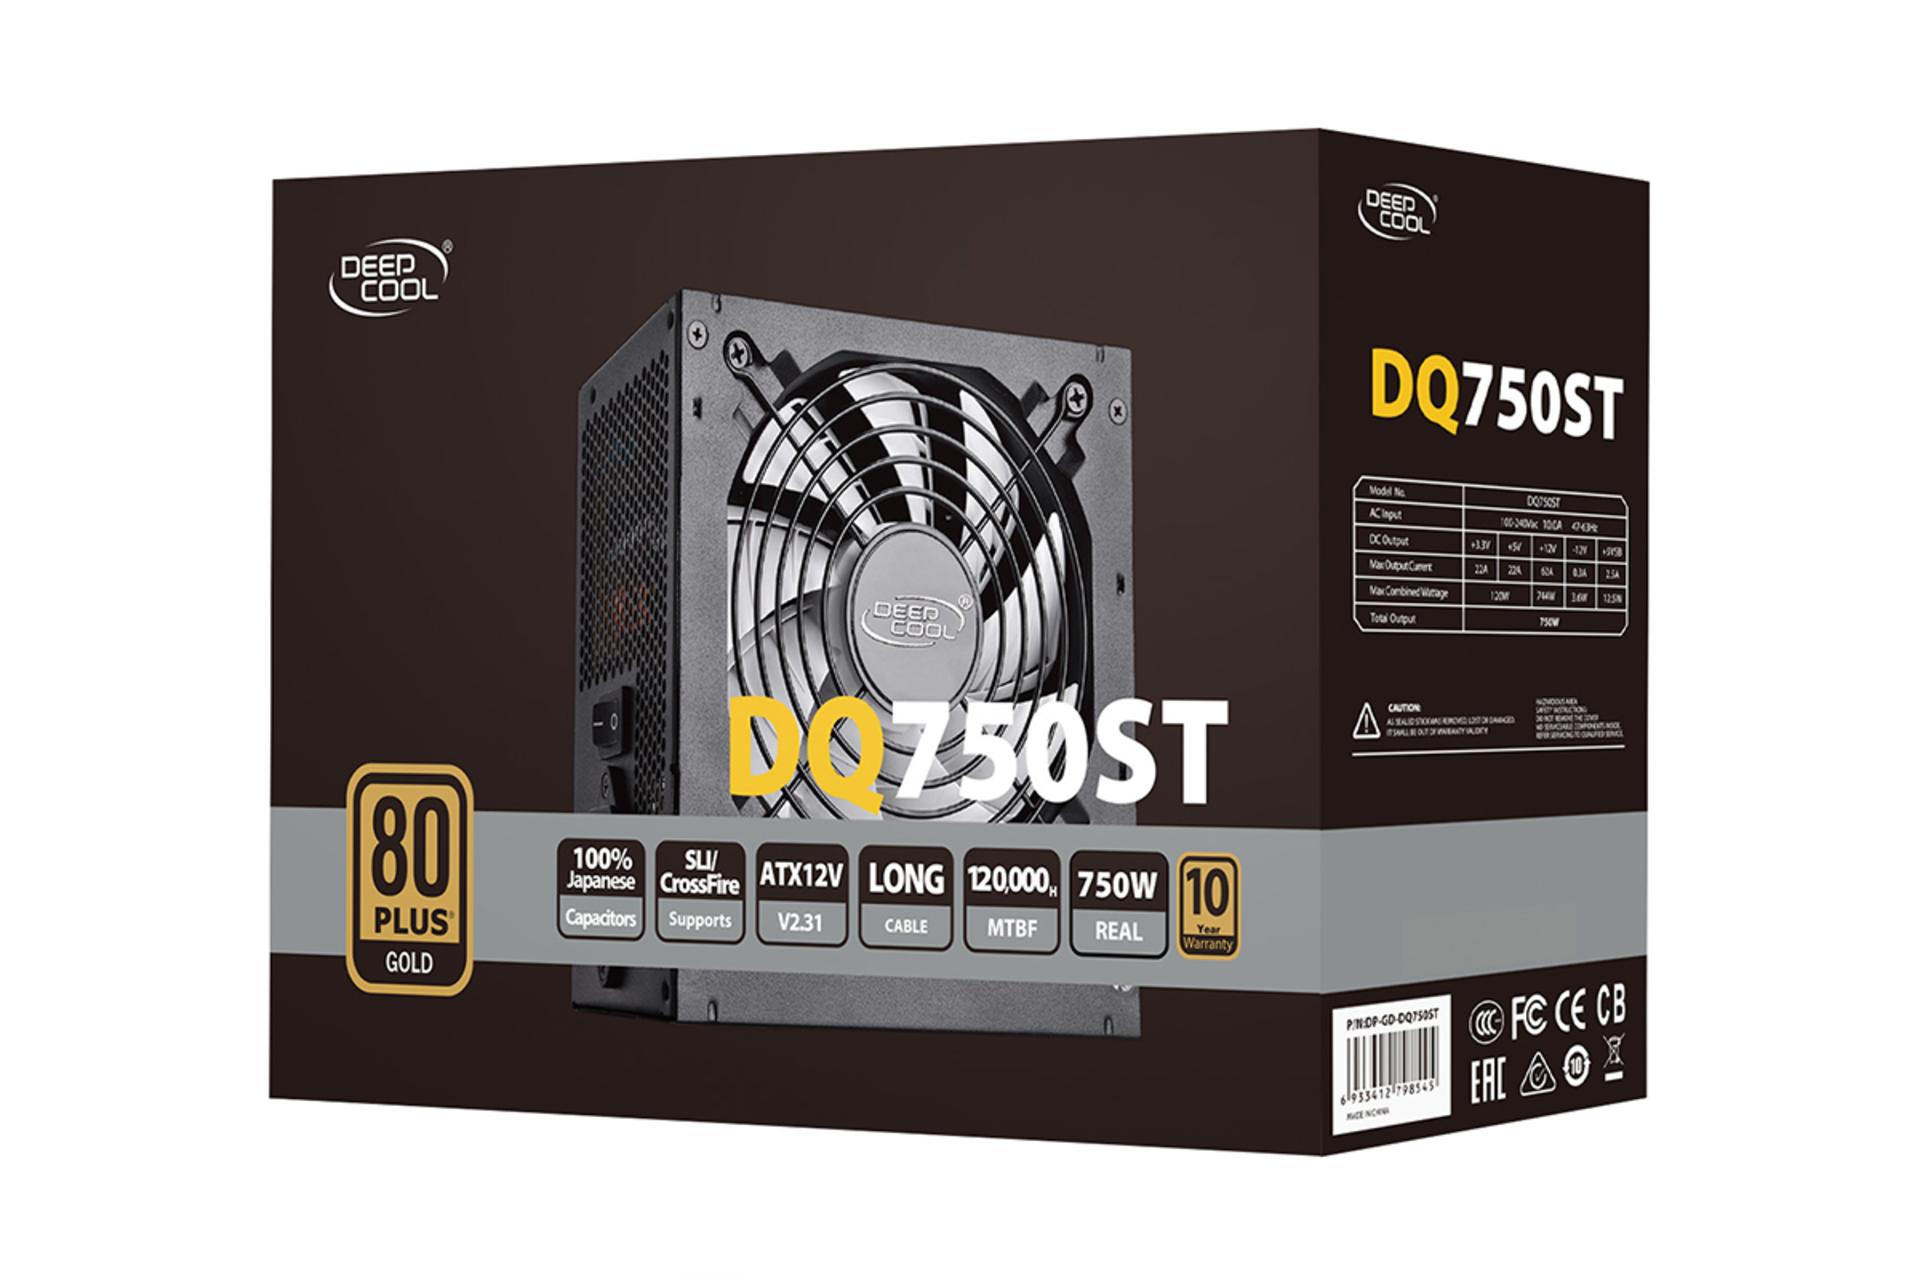 پاور کامپیوتر دیپ کول DQ750ST با توان 750 وات بسته بندی